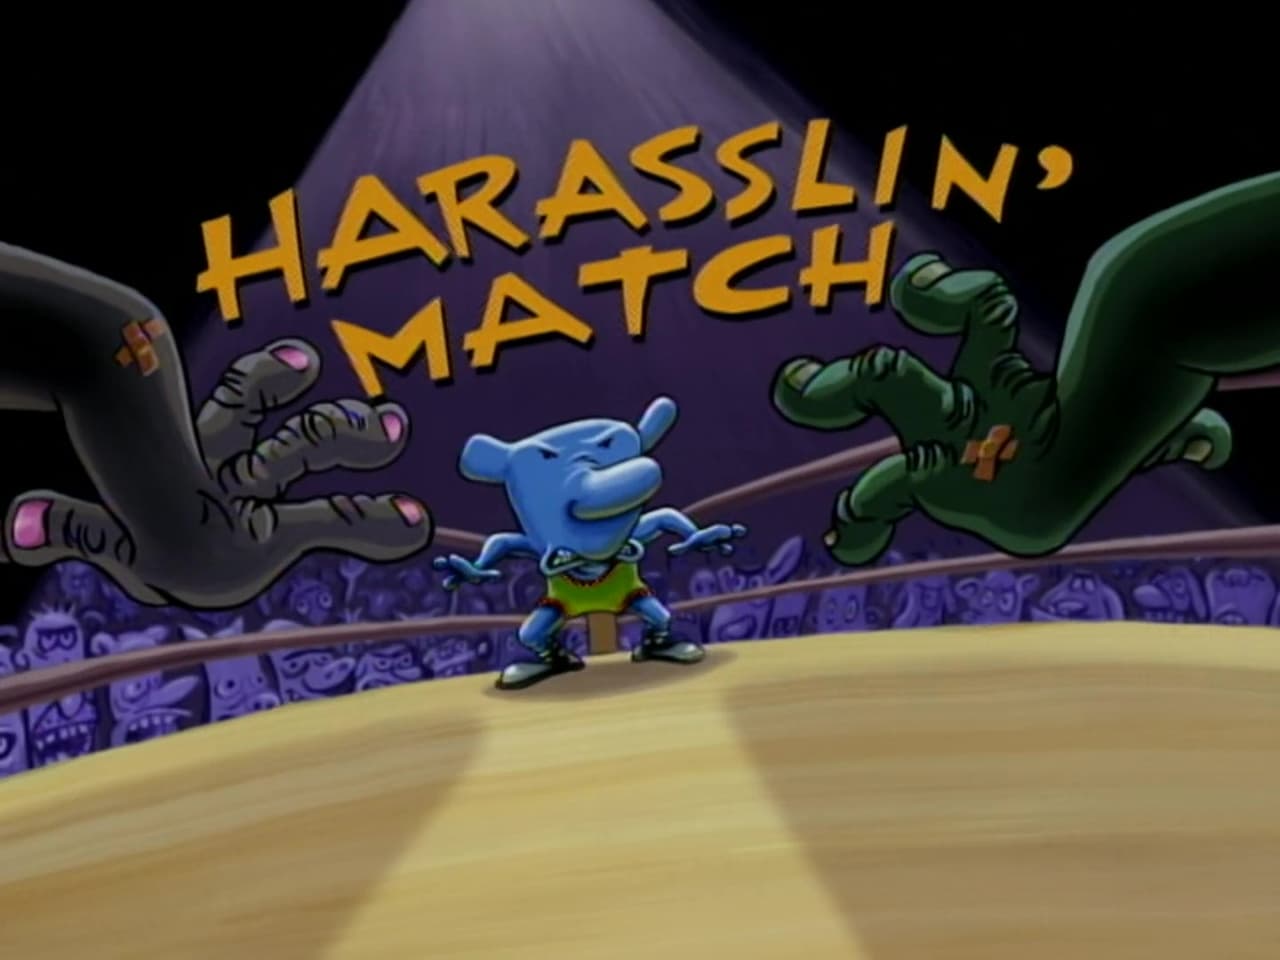 Harraslin Match